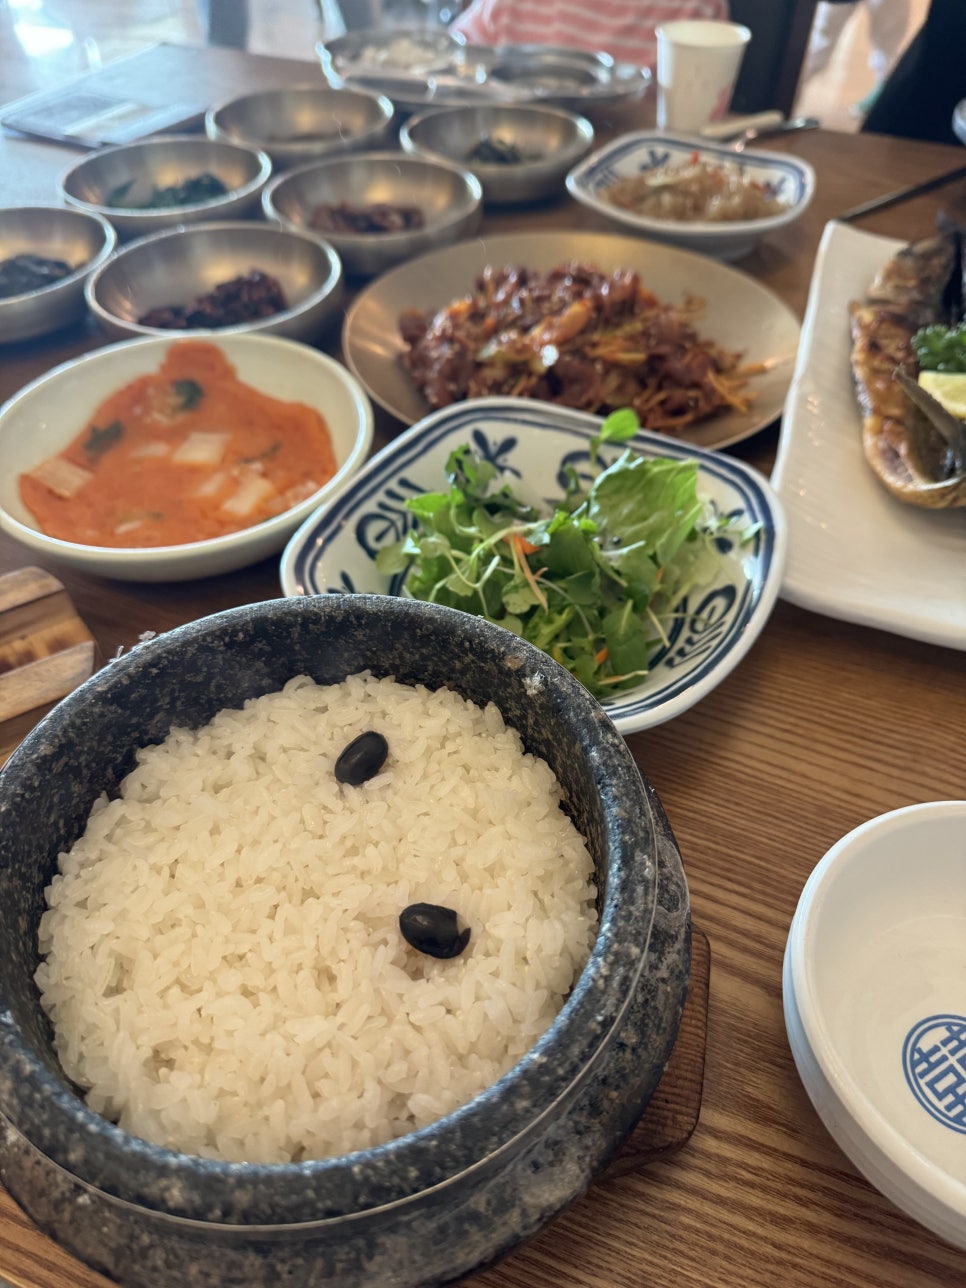 리솜 포레스트 식당에서 먹은것들 : 들밥애, 썬데이브리즈, 모요우 일식 포장